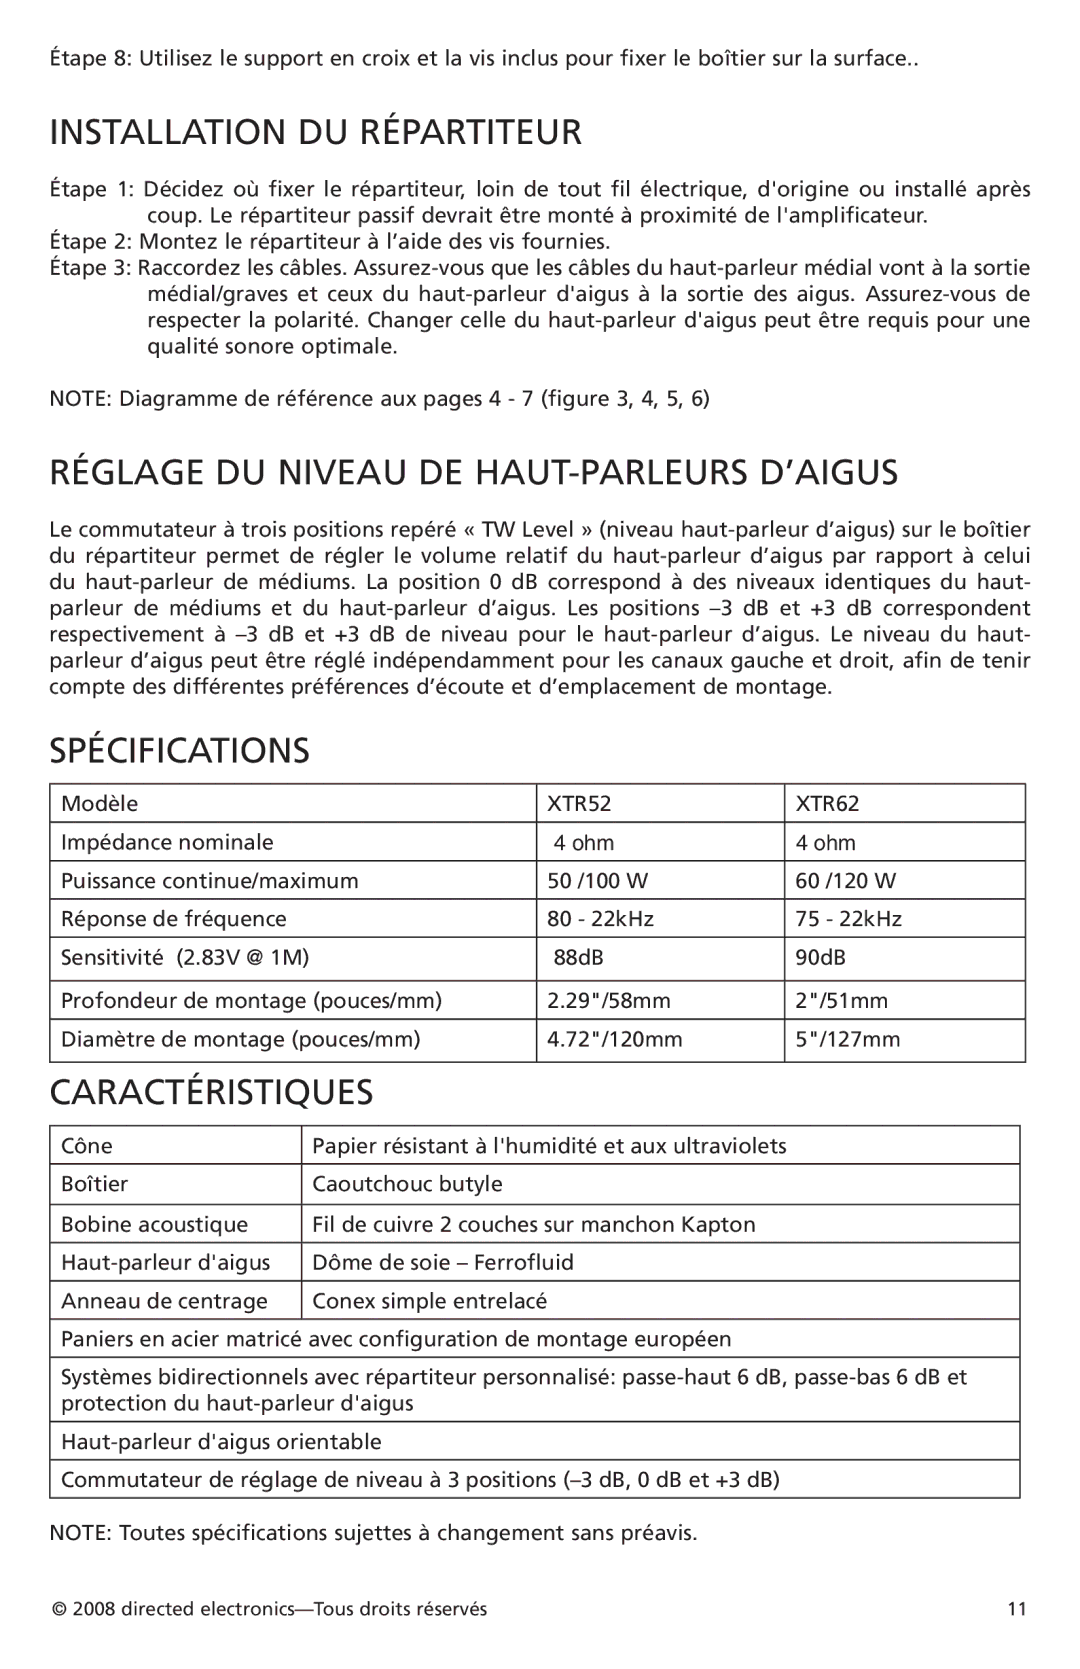 Orion Car Audio XTR62, XTR52 Installation DU Répartiteur, Réglage DU Niveau DE HAUT-PARLEURS D’AIGUS, Spécifications 